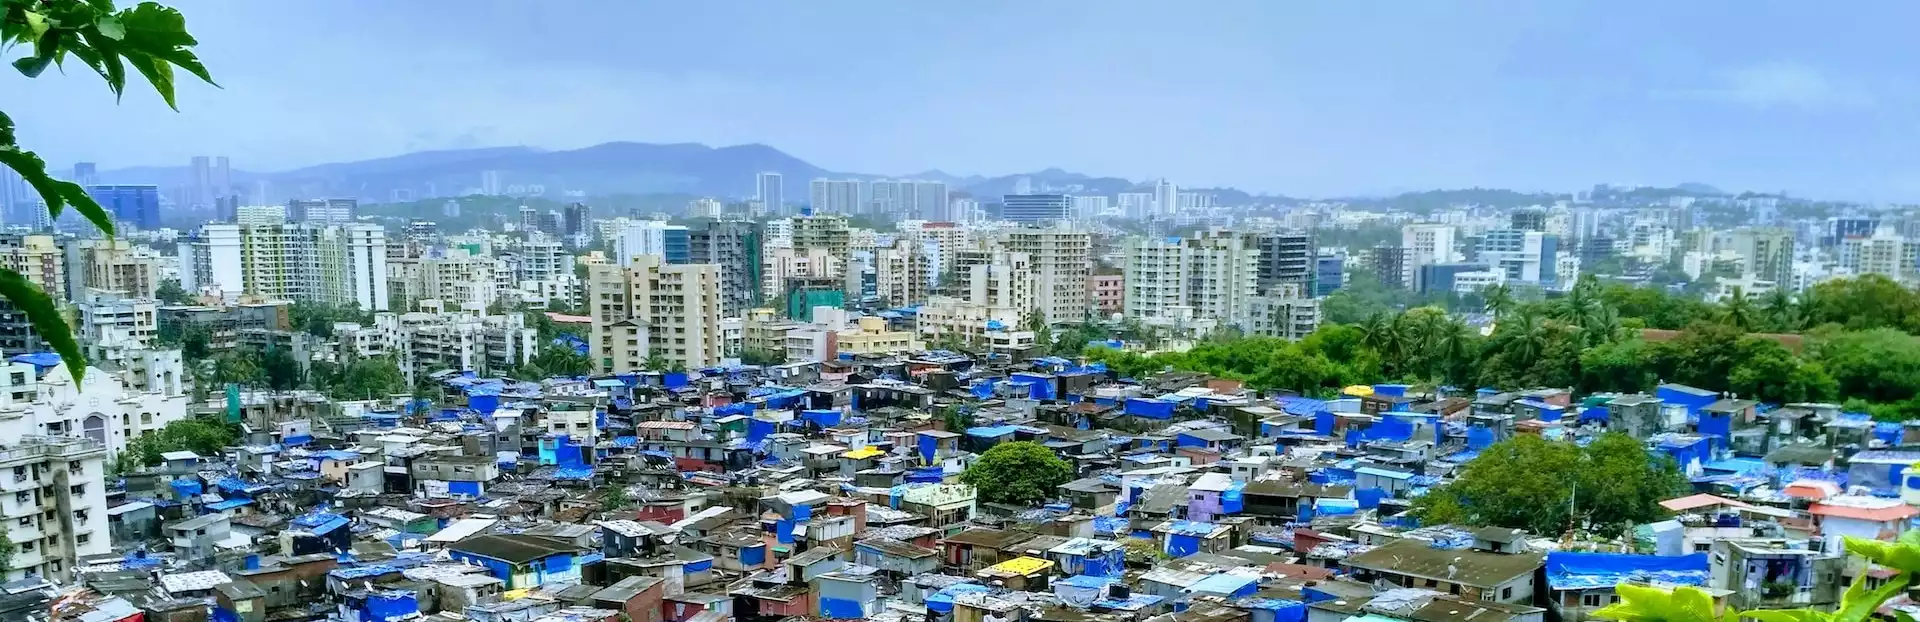 Slums mitten in der Großstadt Mumbai, Maharashtra in Indien zeigen die Unterschiede zwischen Arm und Reich auf engsten Raum. Ein Ziel von Green Bonds ist es, soziale Ungerechtigkeiten zu reduzieren.